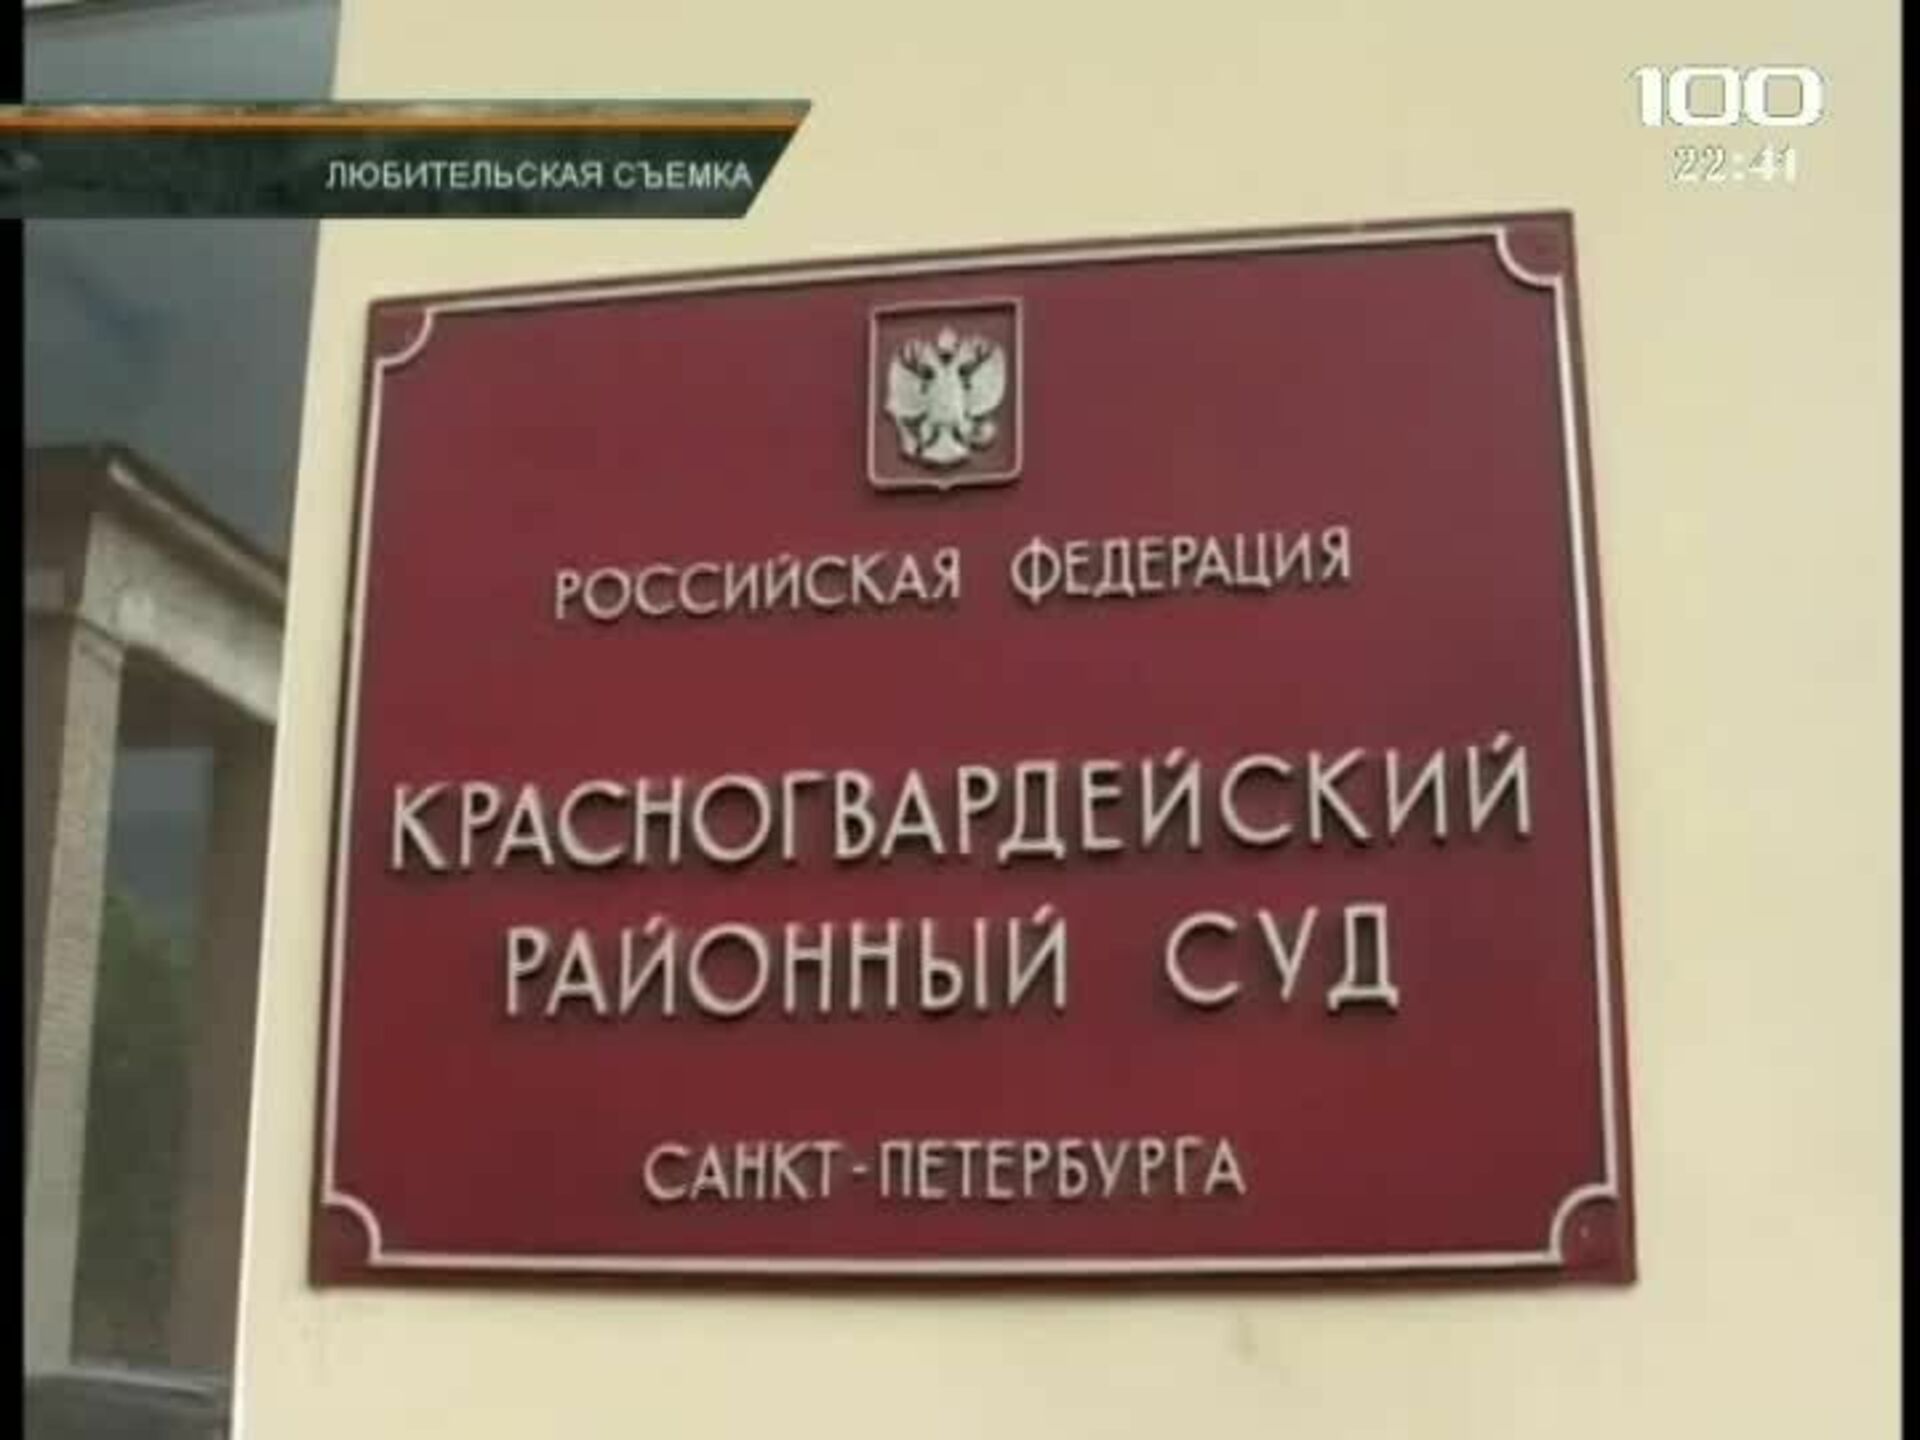 Красногвардейский районный суд ставропольского края